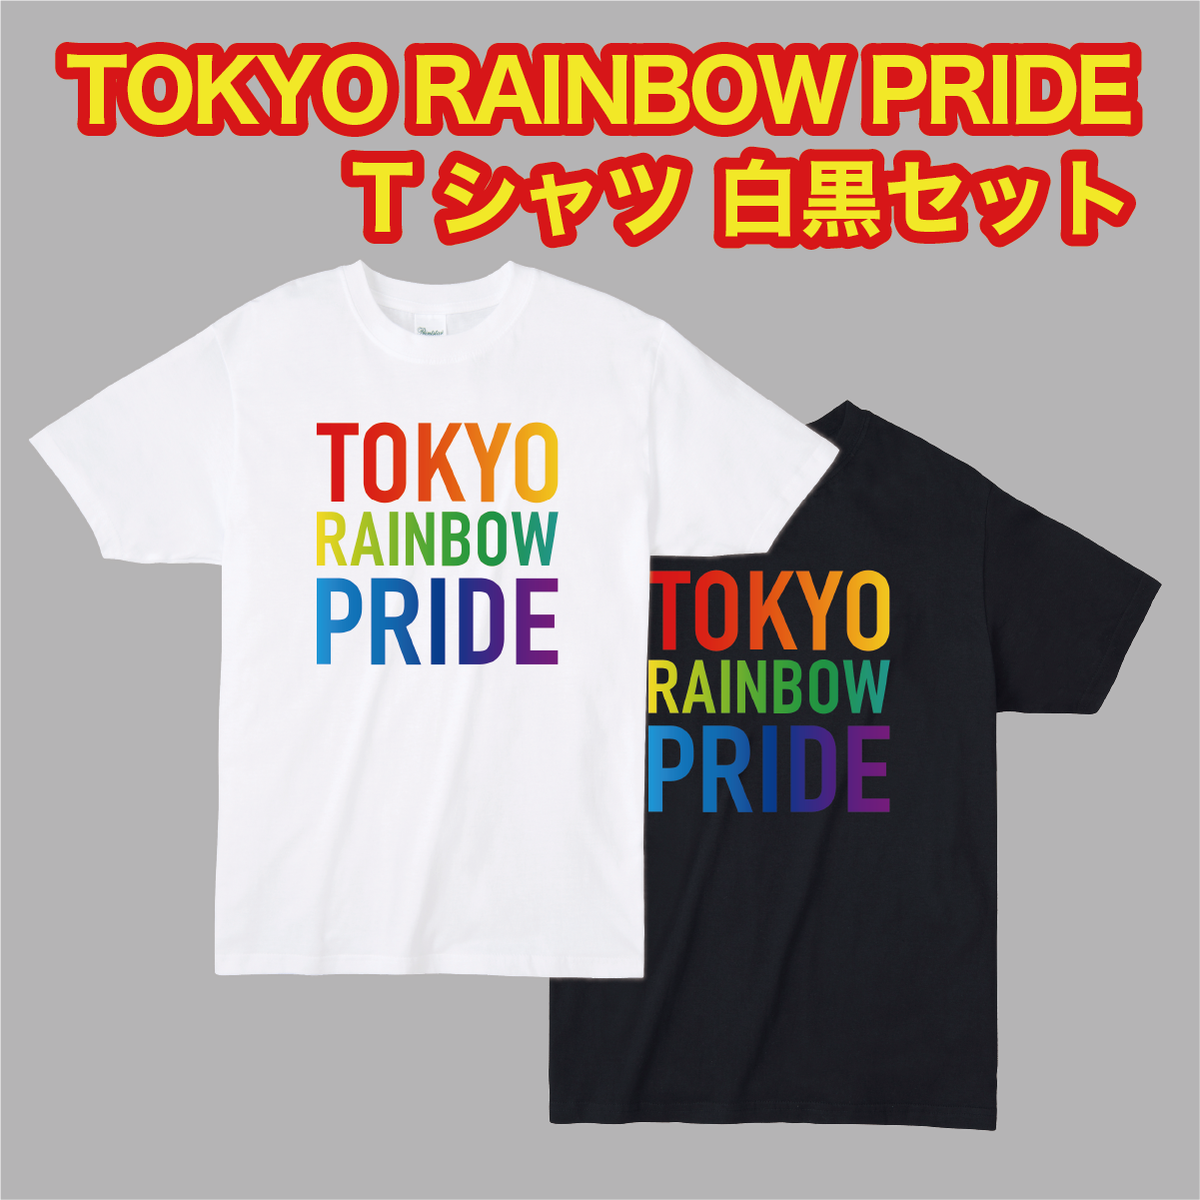 TRP Tシャツ白黒セット レインボーロゴデザインTシャツ ＜500円OFF＞